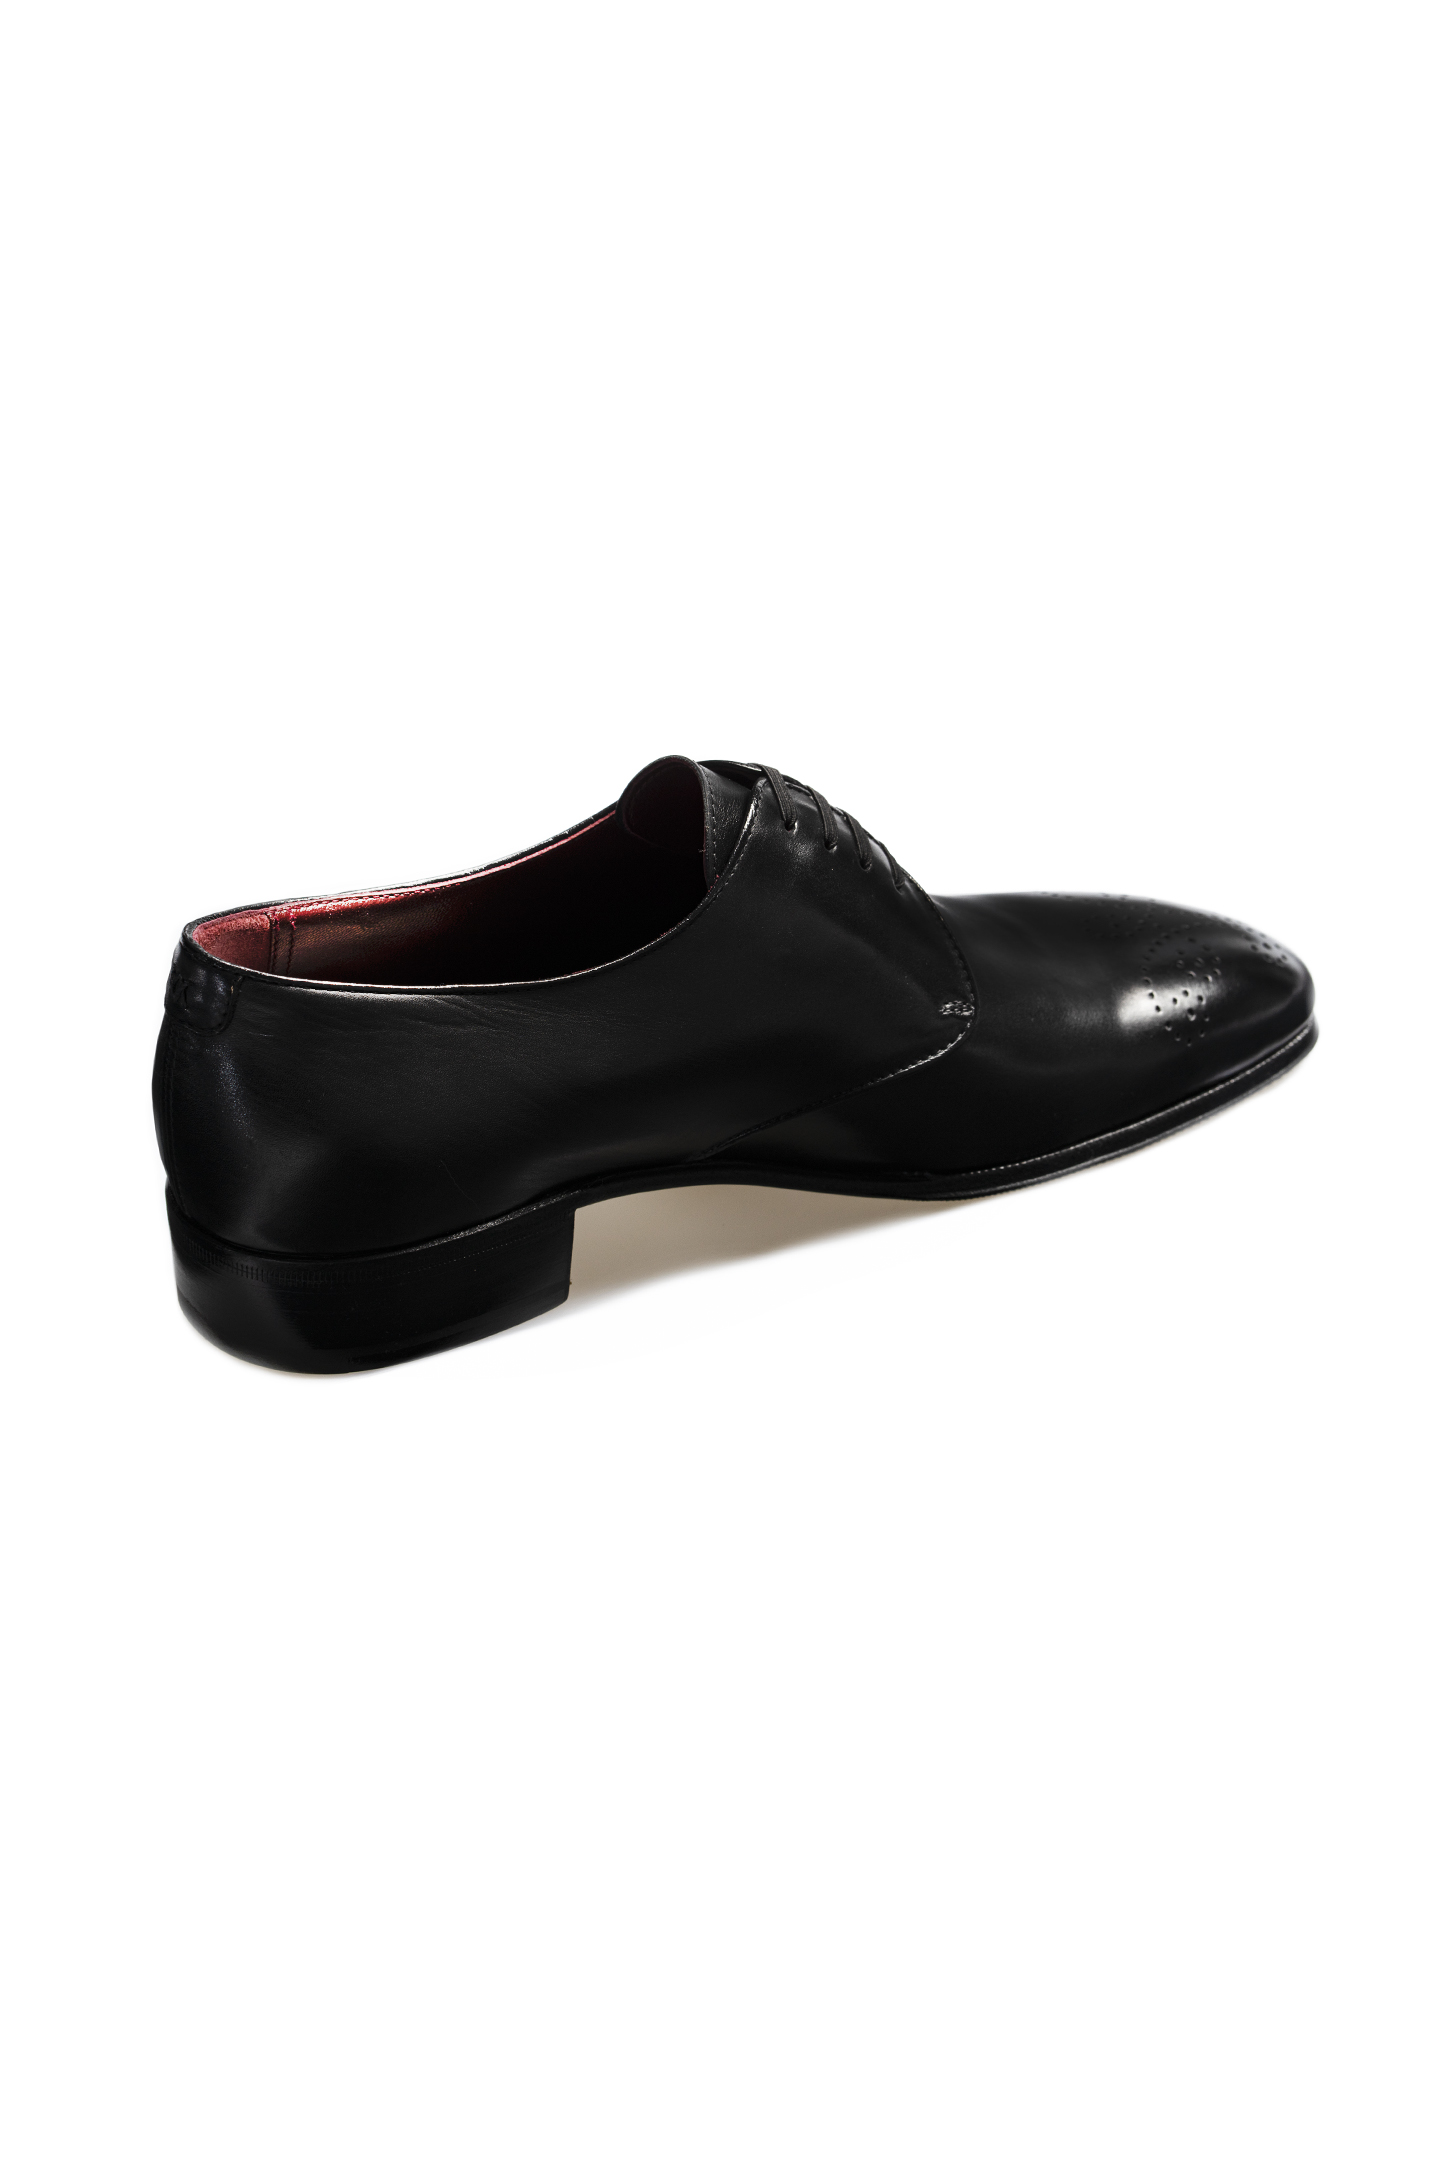 Туфли ARTIOLI 06R552, цвет: Черный, Мужской